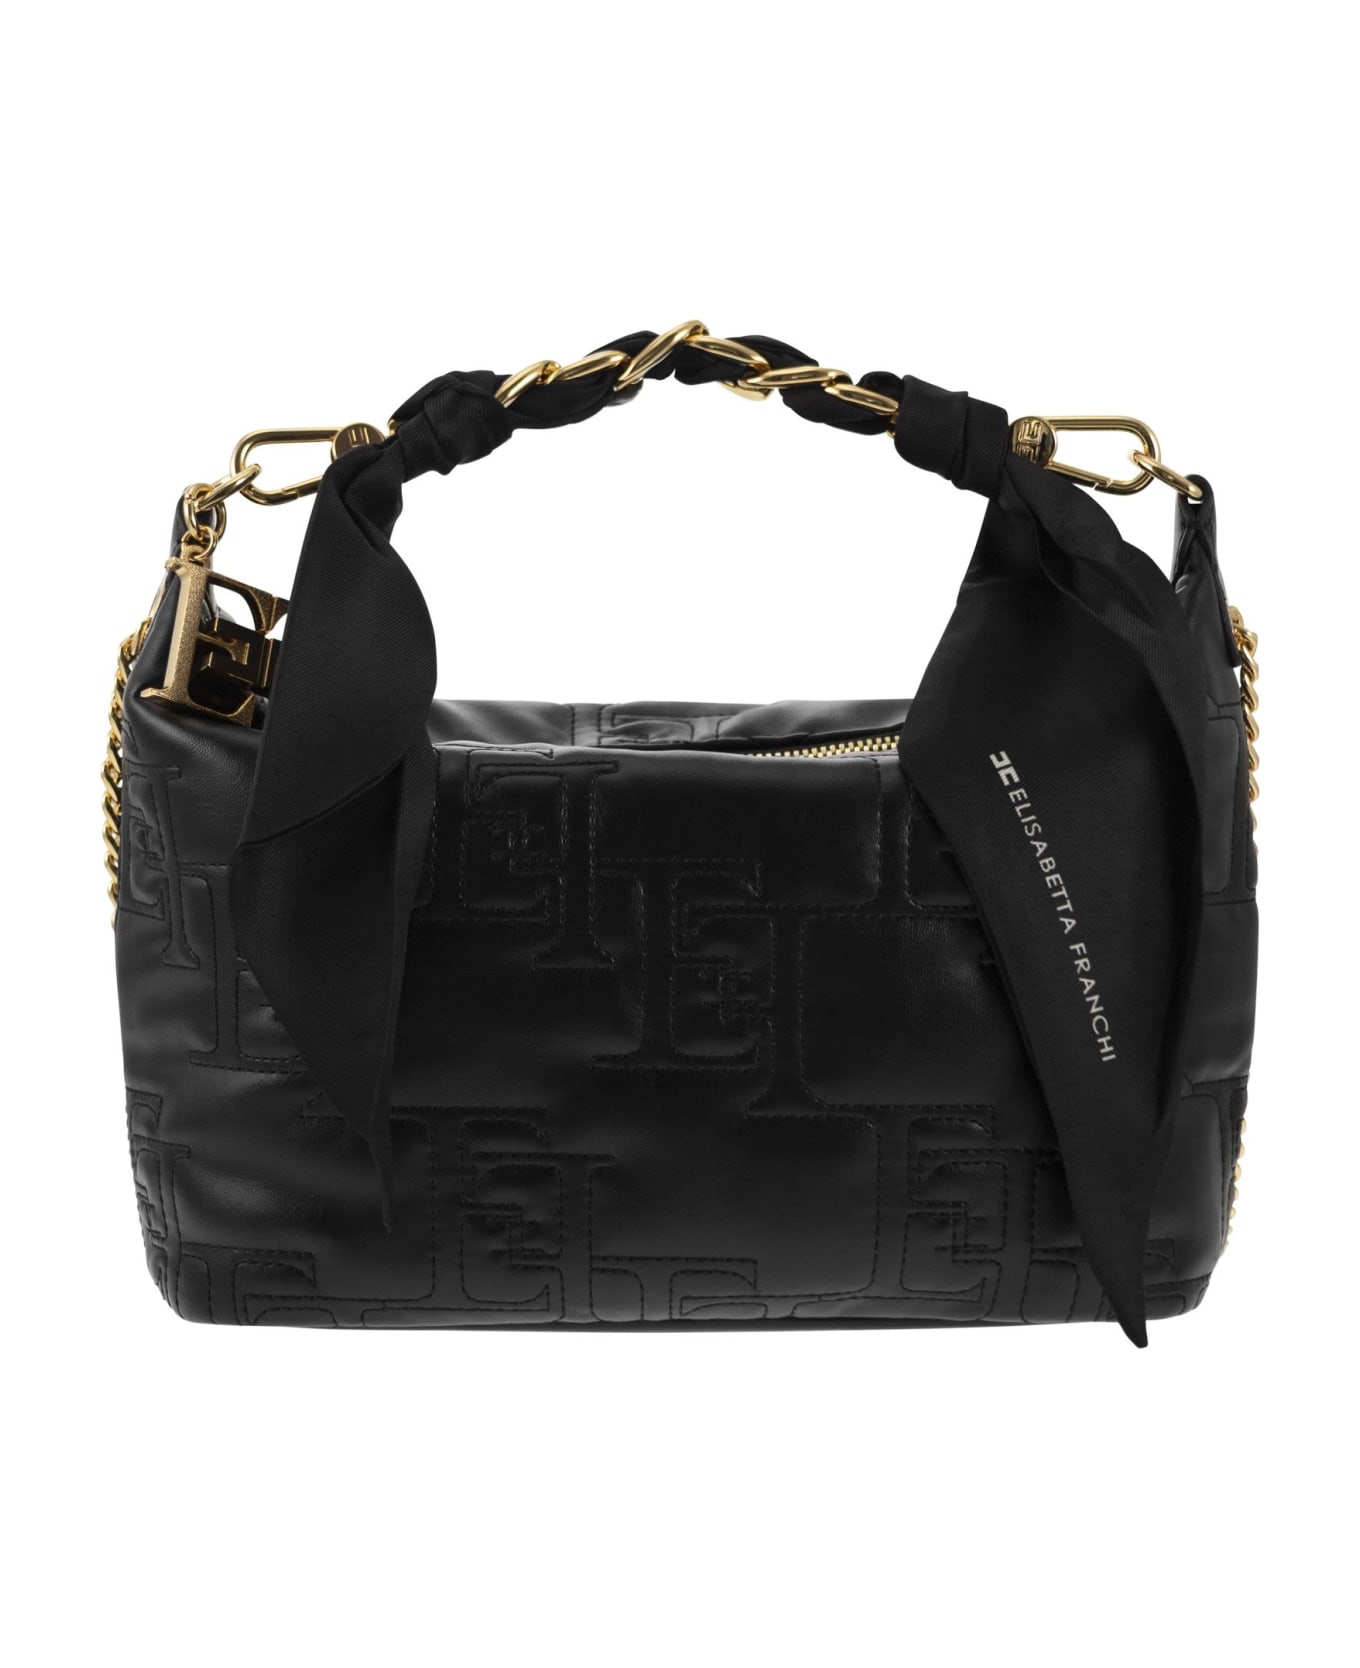 Elisabetta Franchi Black Handbag - Black